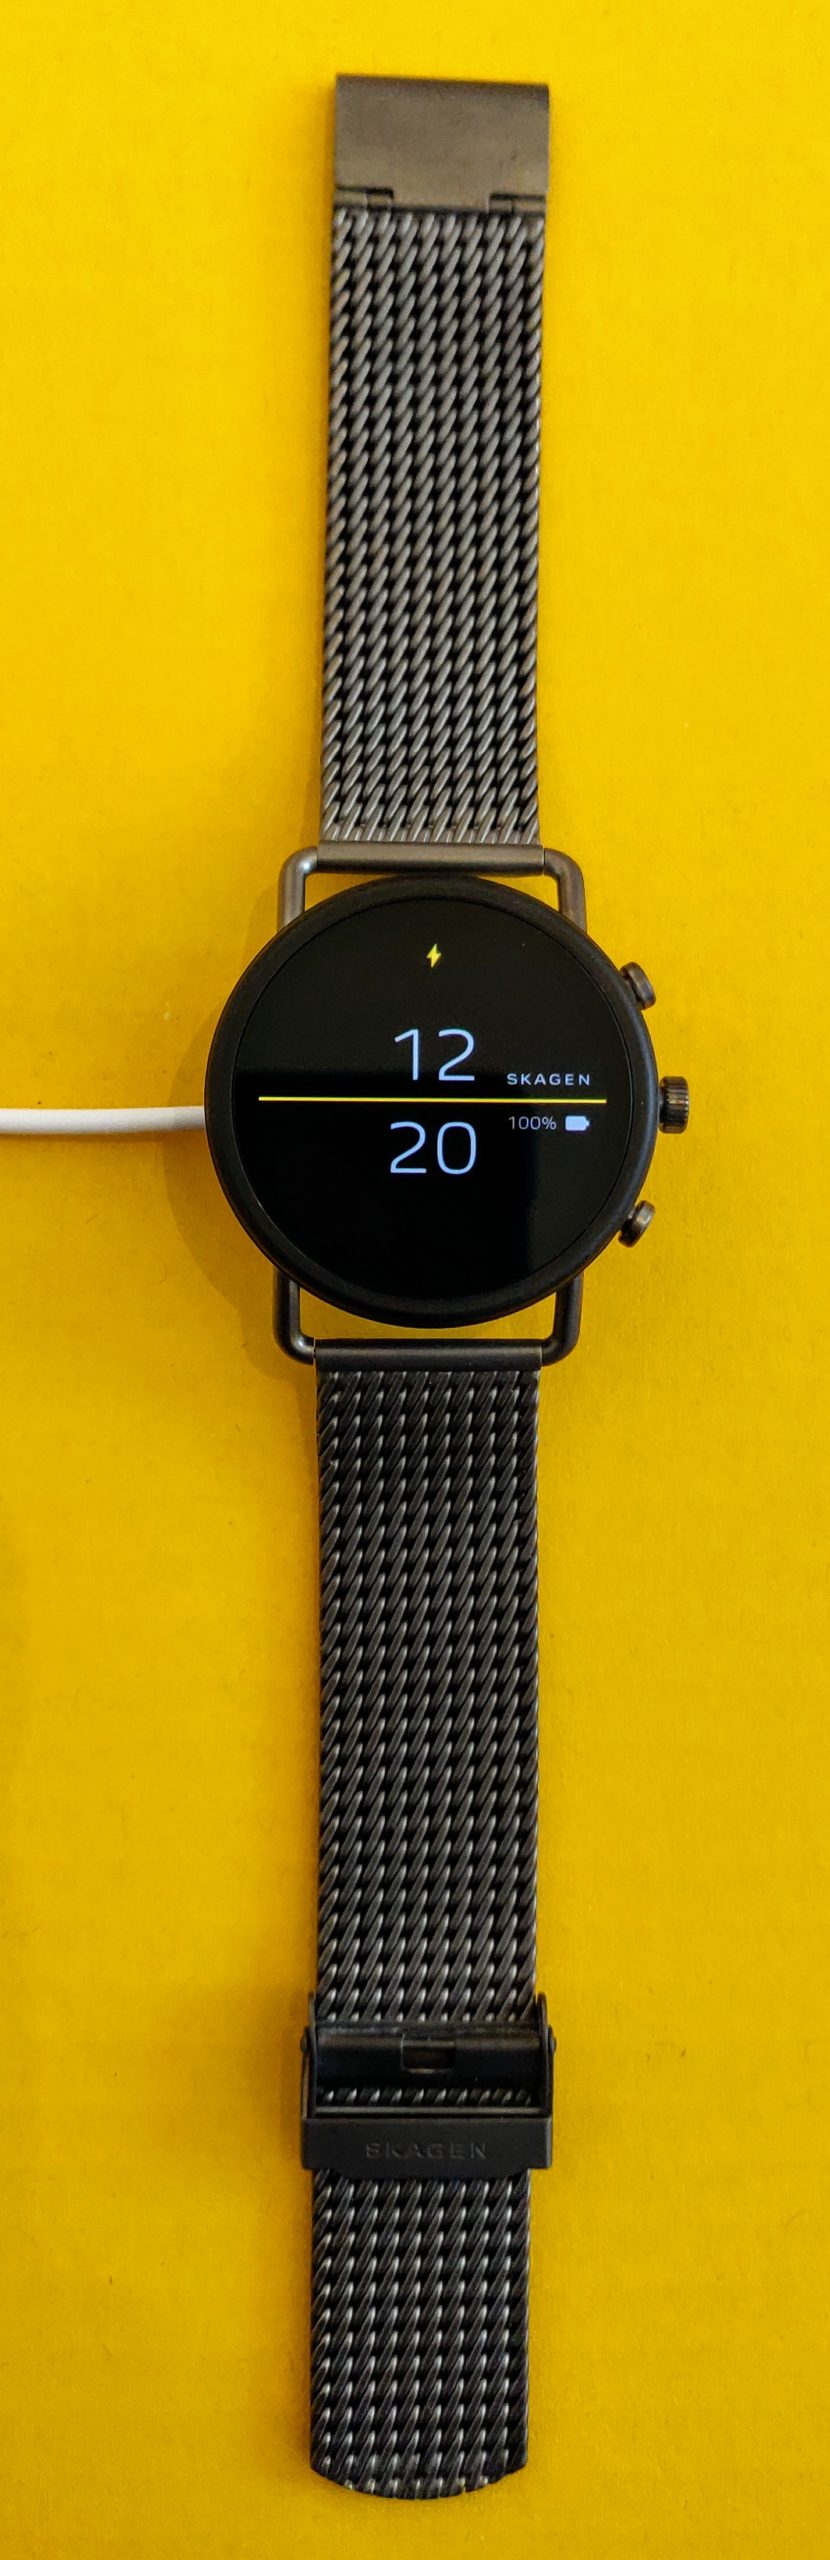 Hvilke funktioner har Skagen smartwatches?